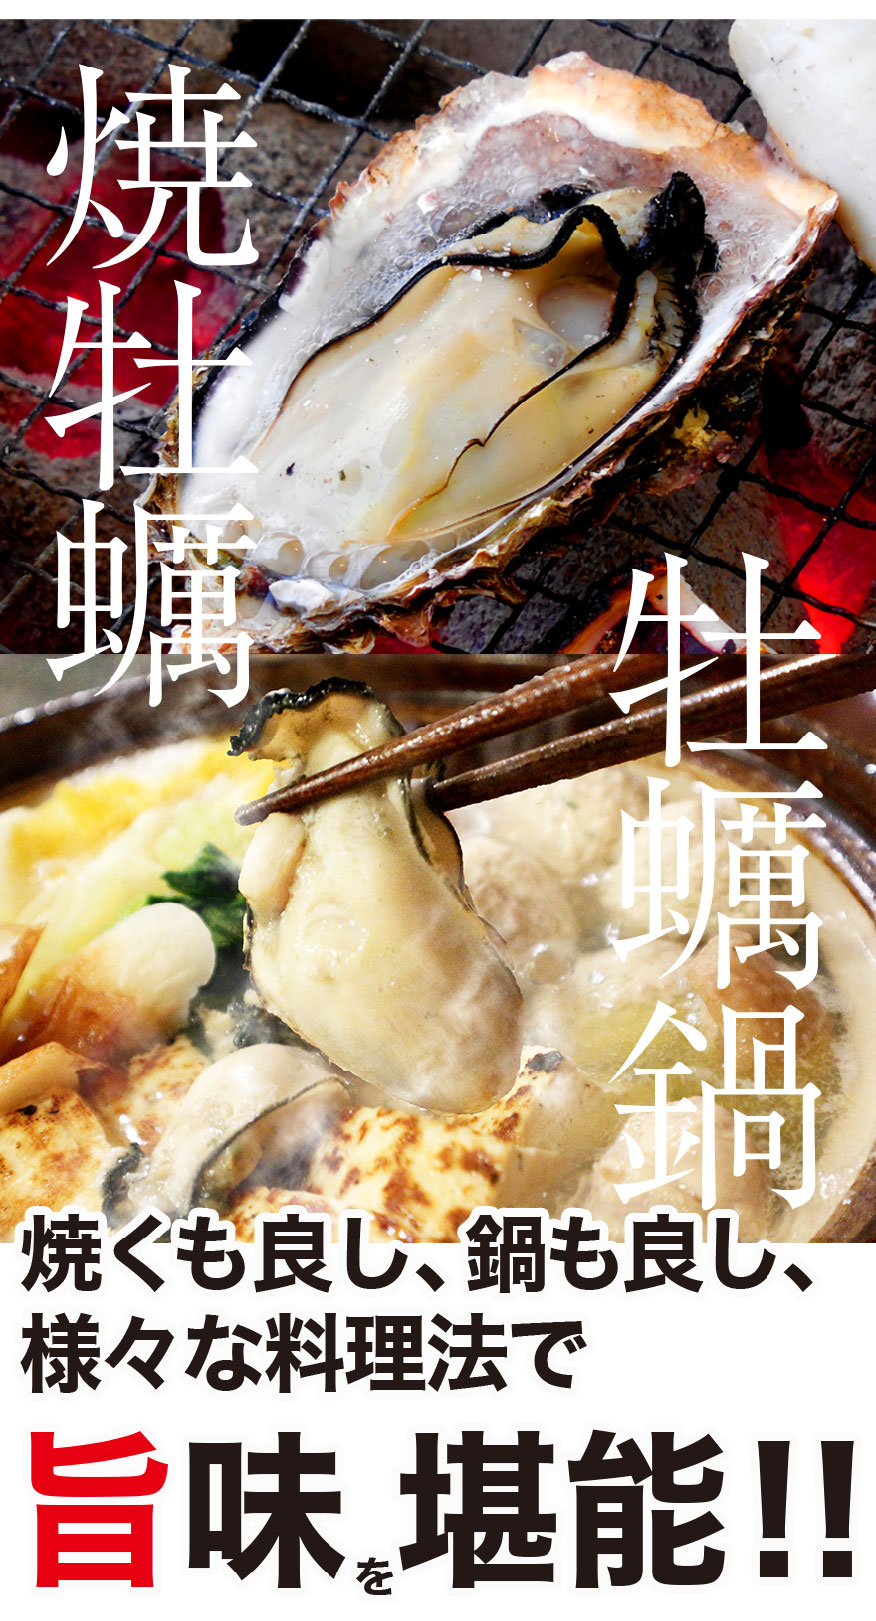 広島県産 冷凍殻付牡蠣 2kg 約15～18個前後入 2～3人前 バーベキュー BBQ カンカン焼き追加用として人気 カンカンは付いてません |  マグロの吉井